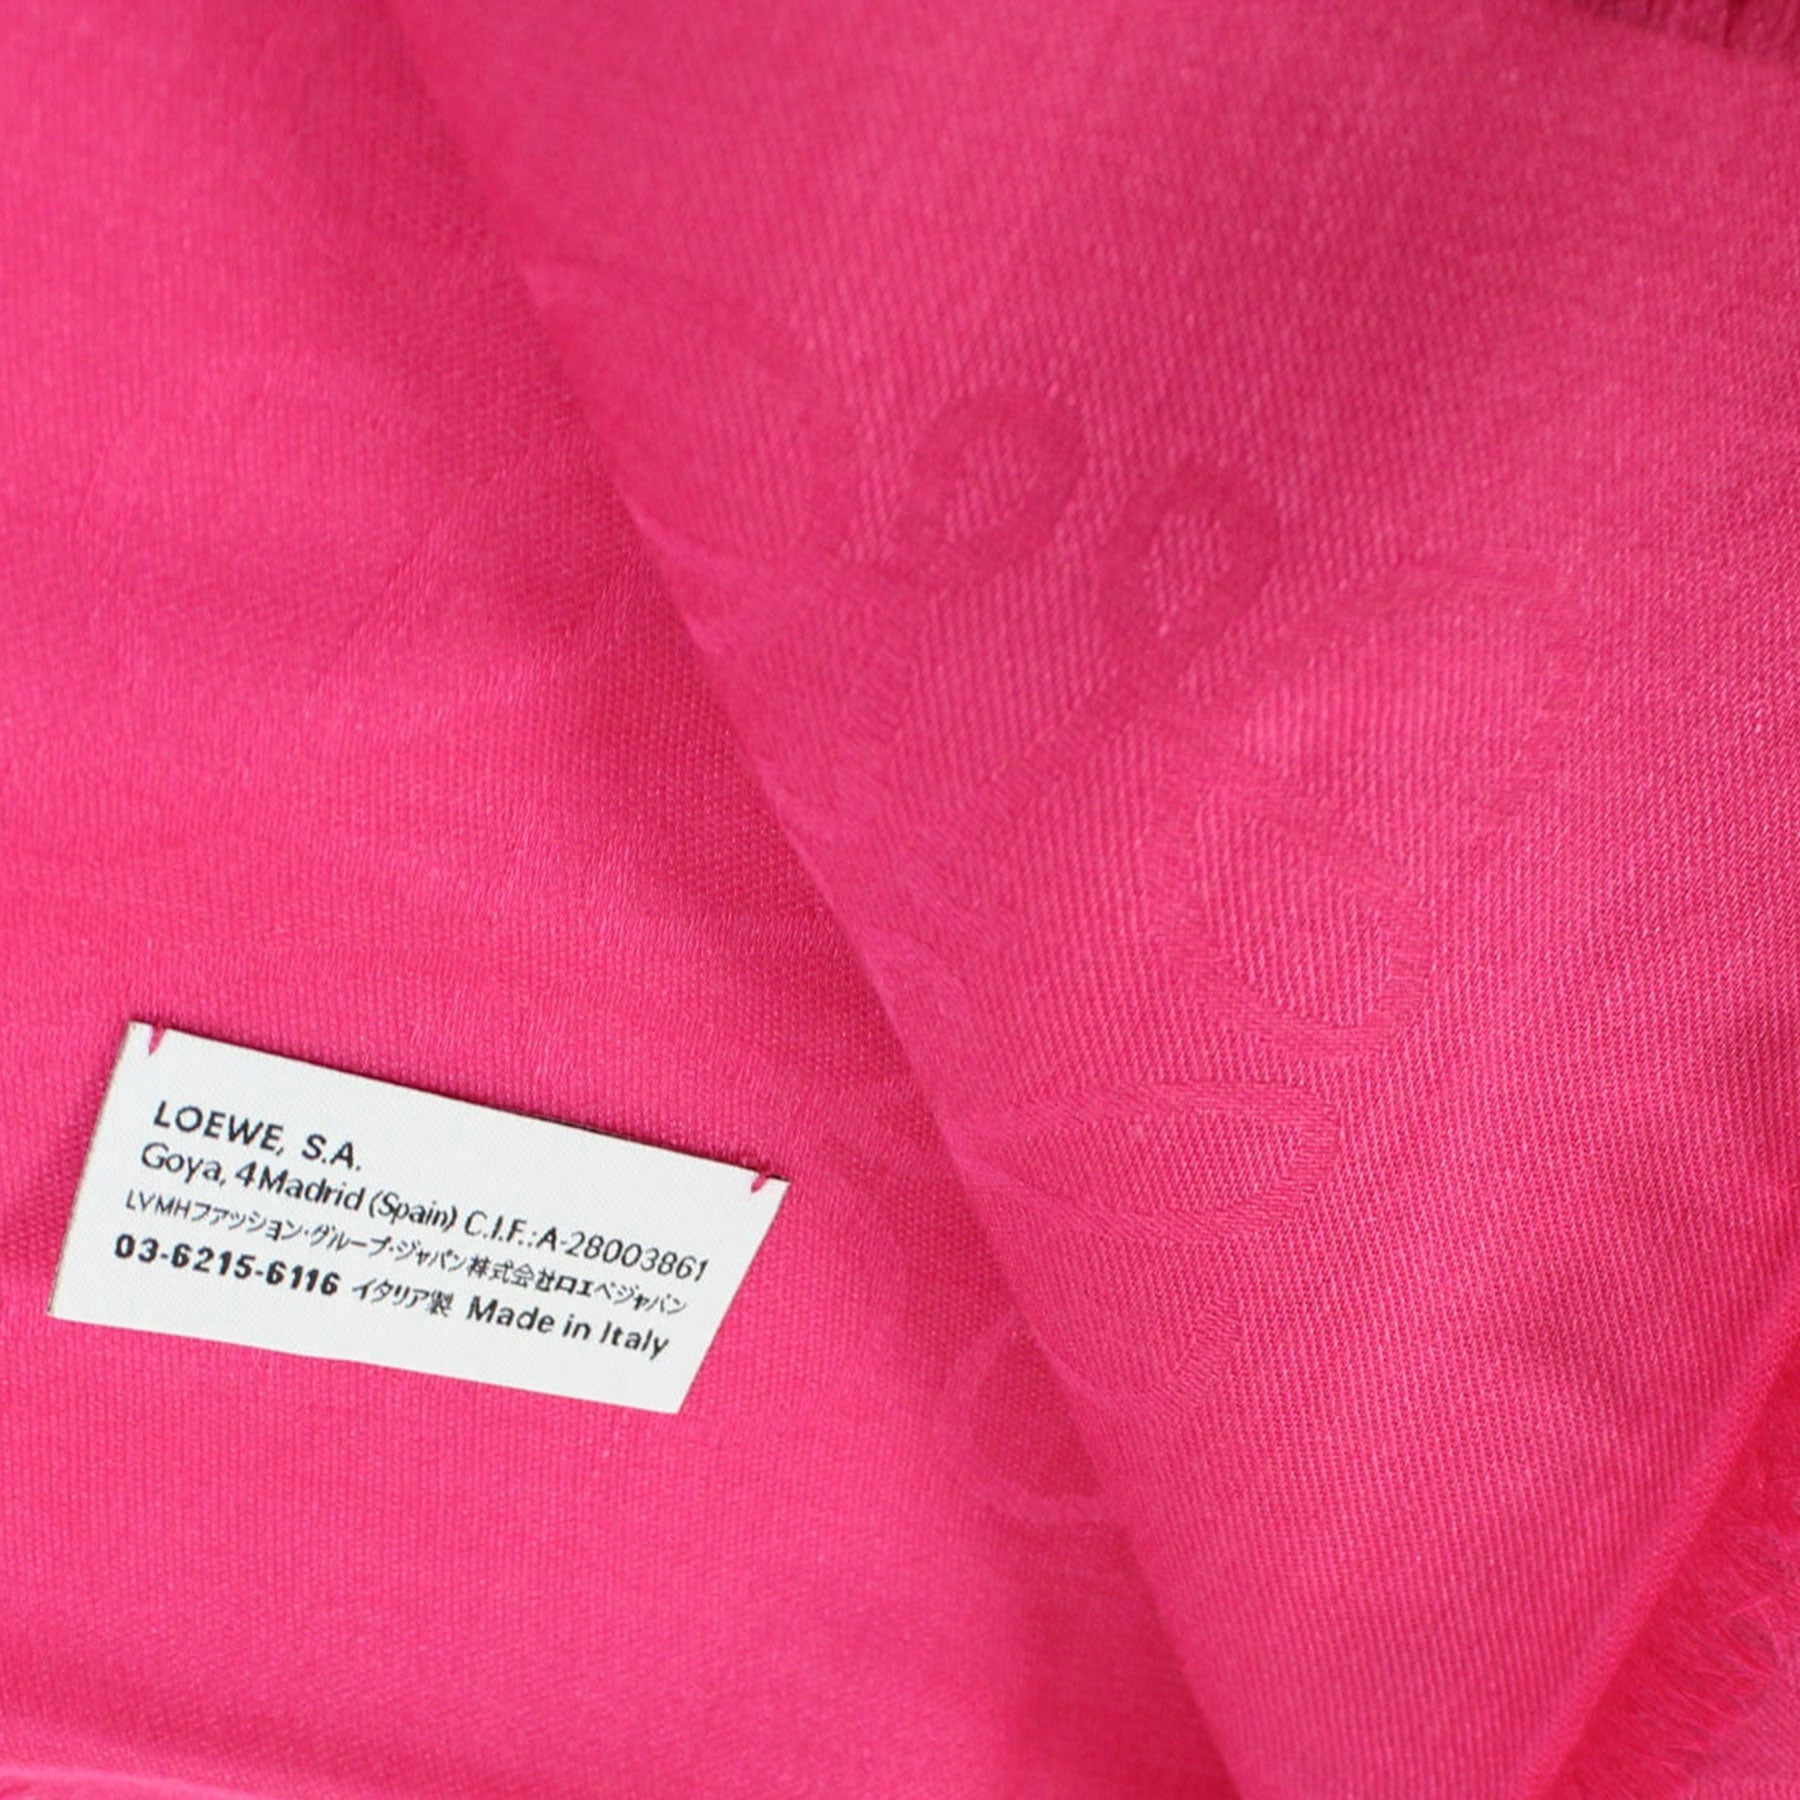 Loewe Anagram Scarf Fuchsia Solid Anagram - Wool Silk Cashmere Shawl